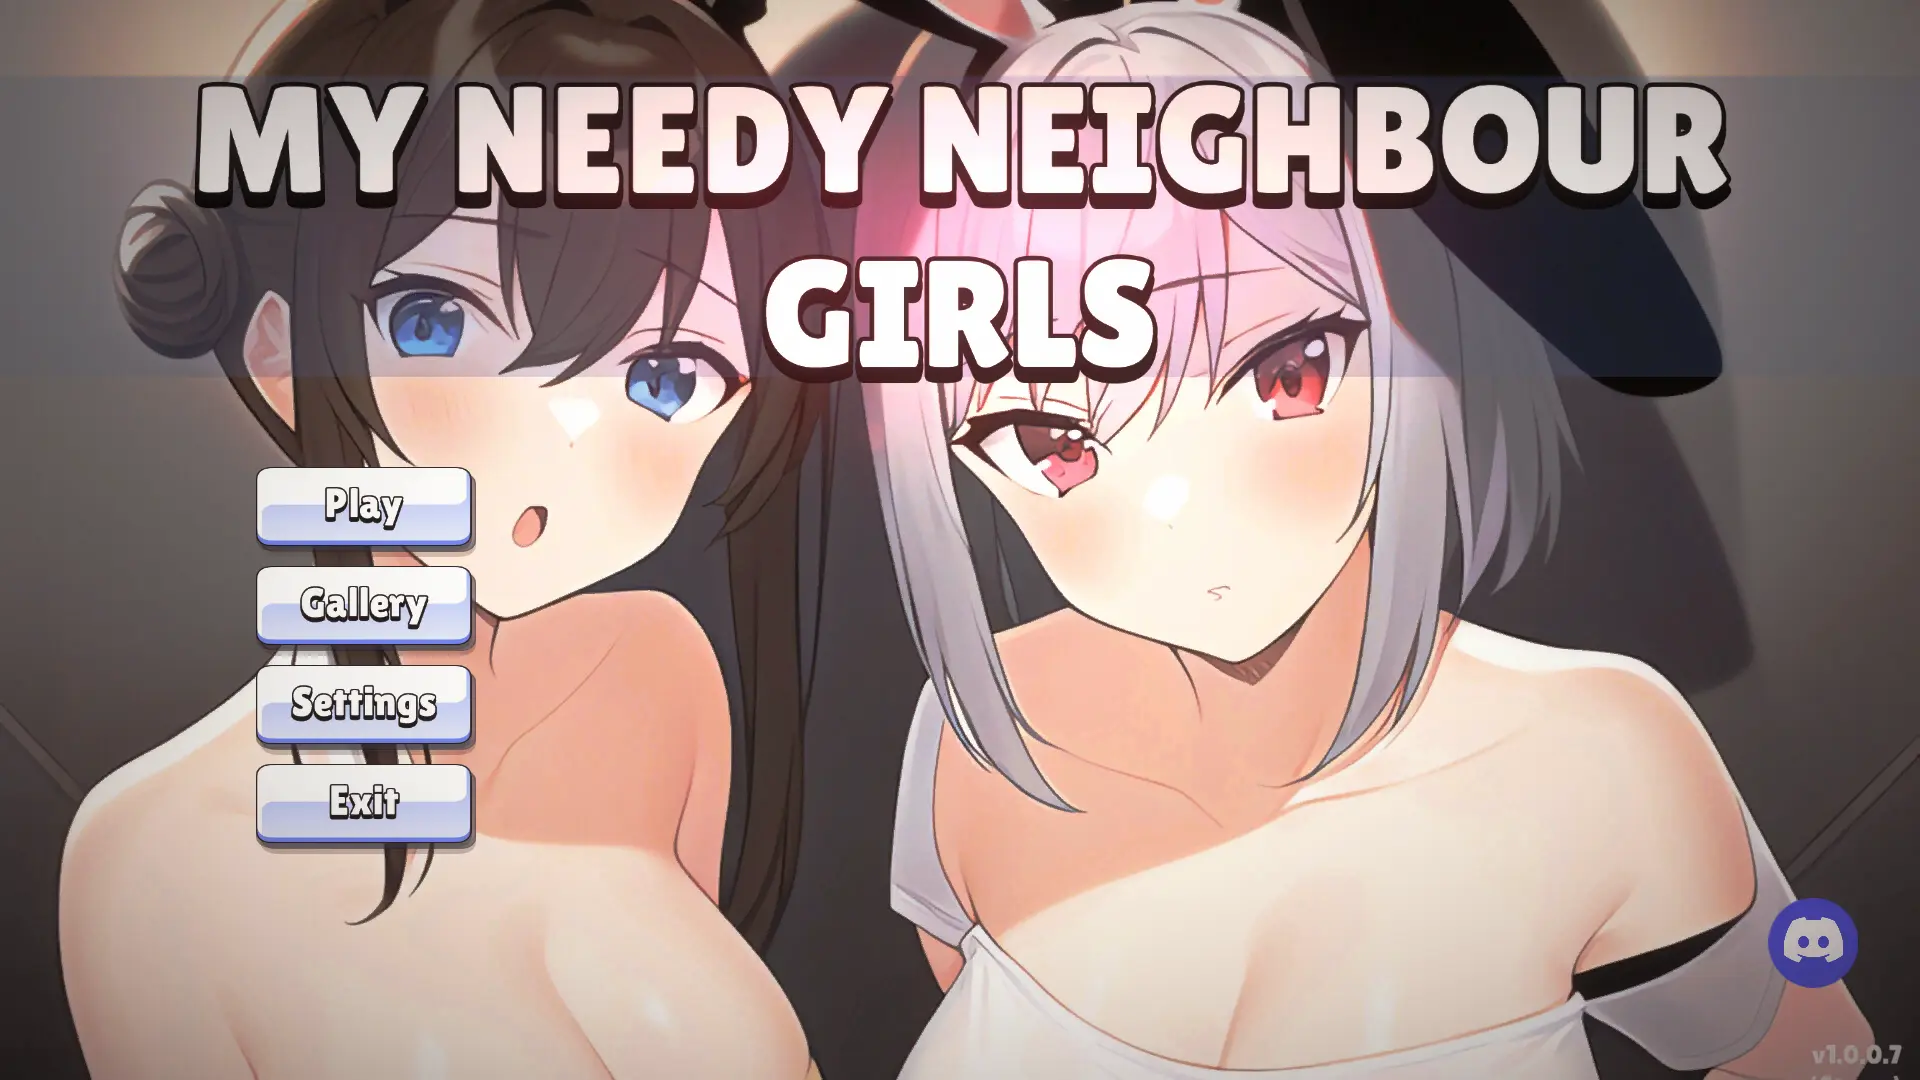 My Needy Neighbor Girls main image